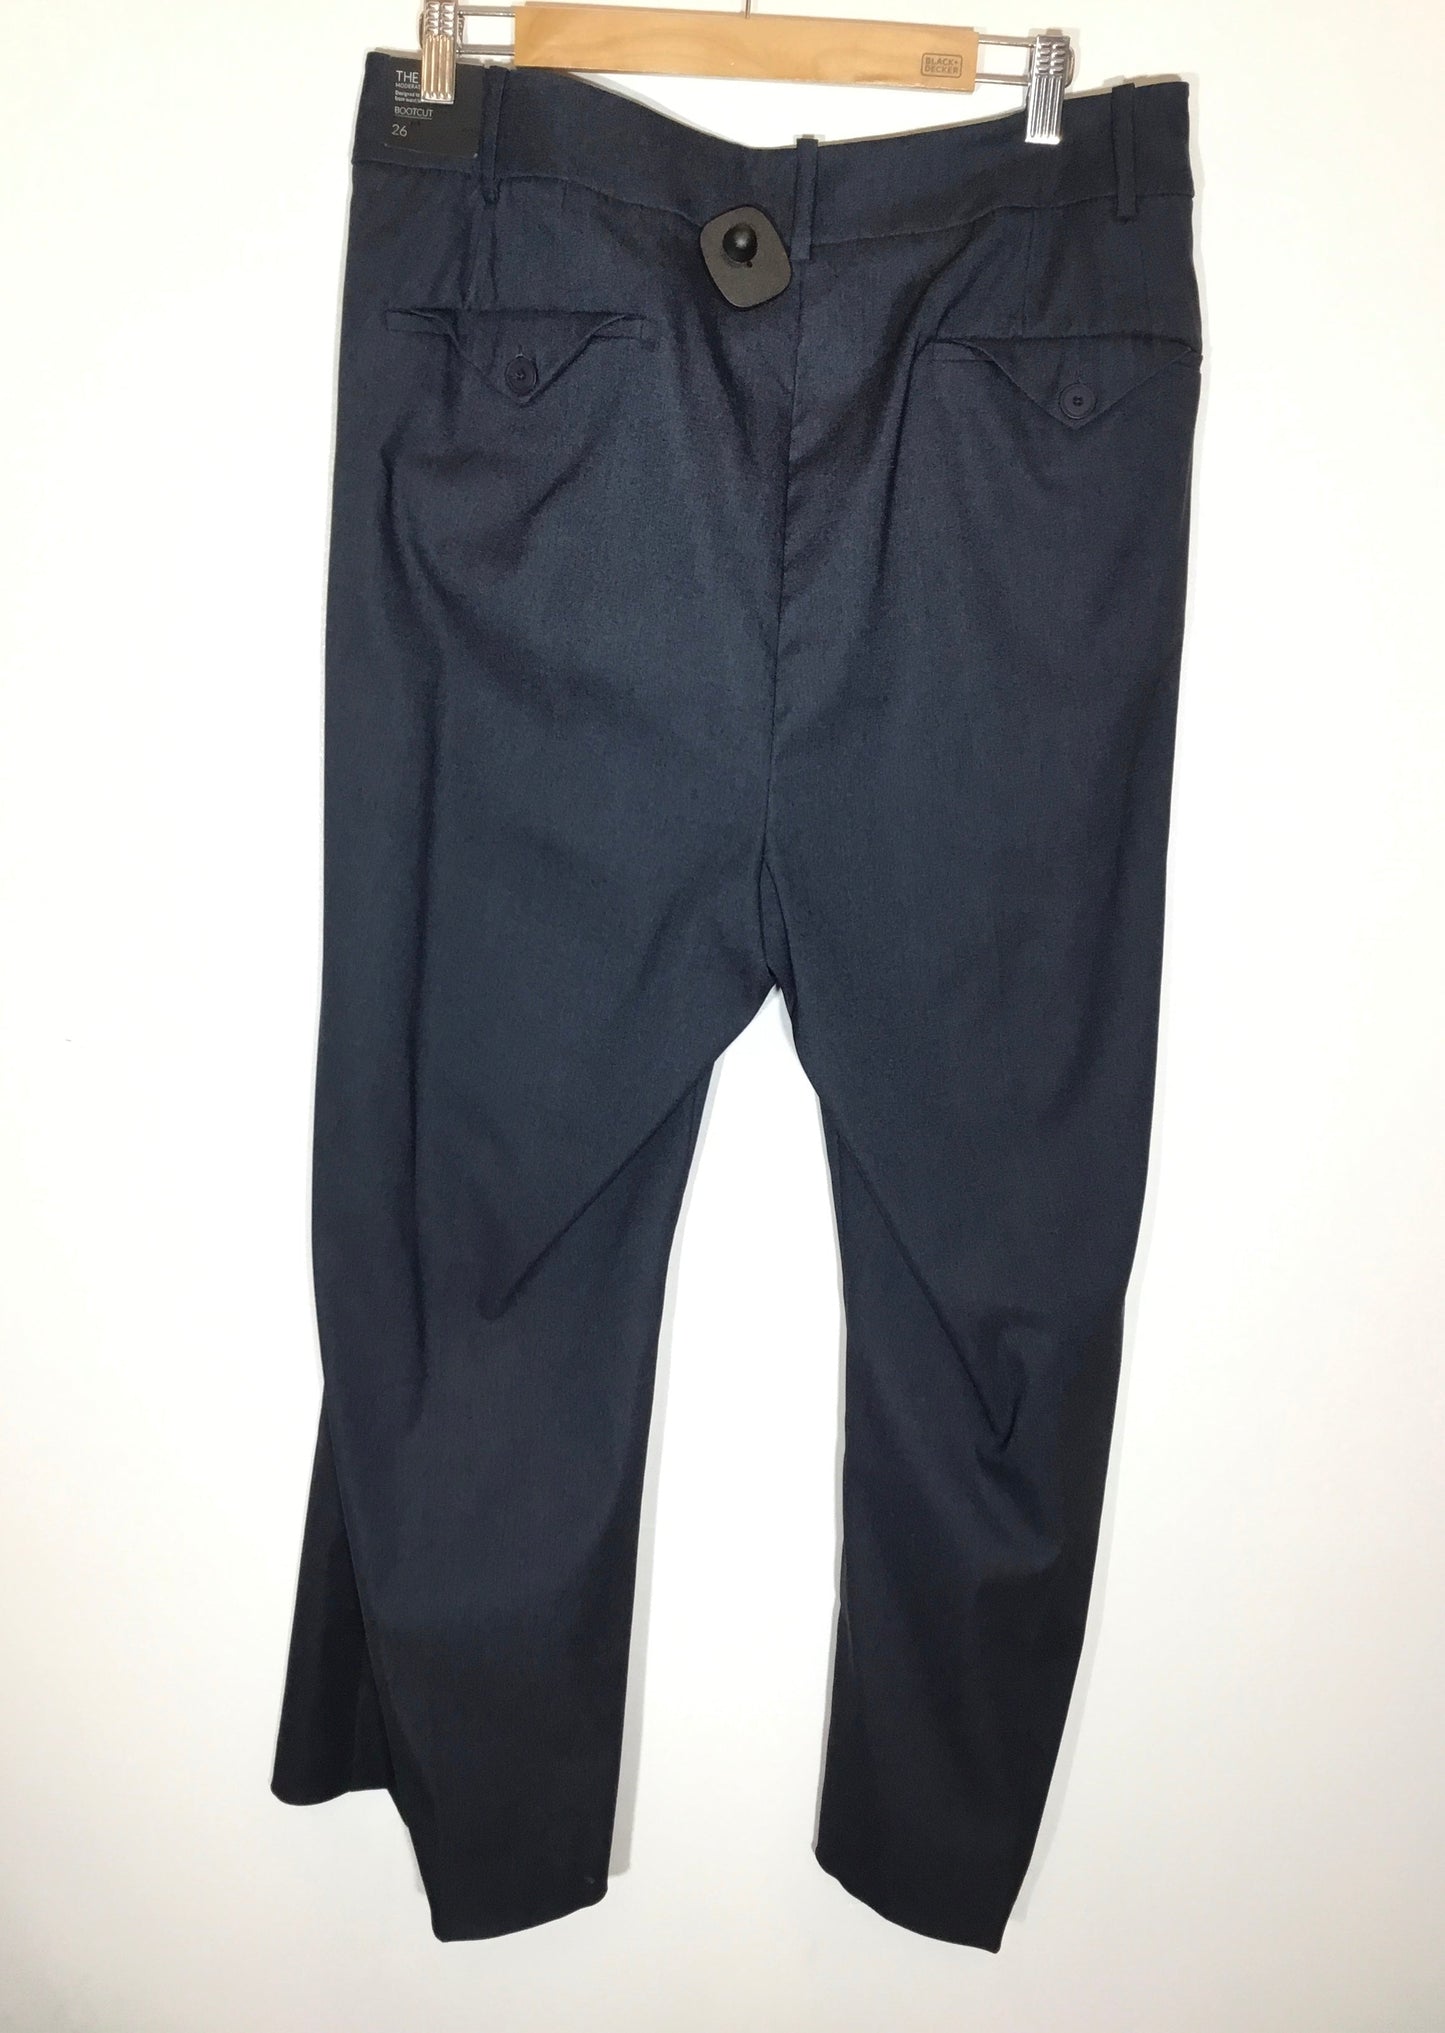 Pants By Lane Bryant  Size: 4x